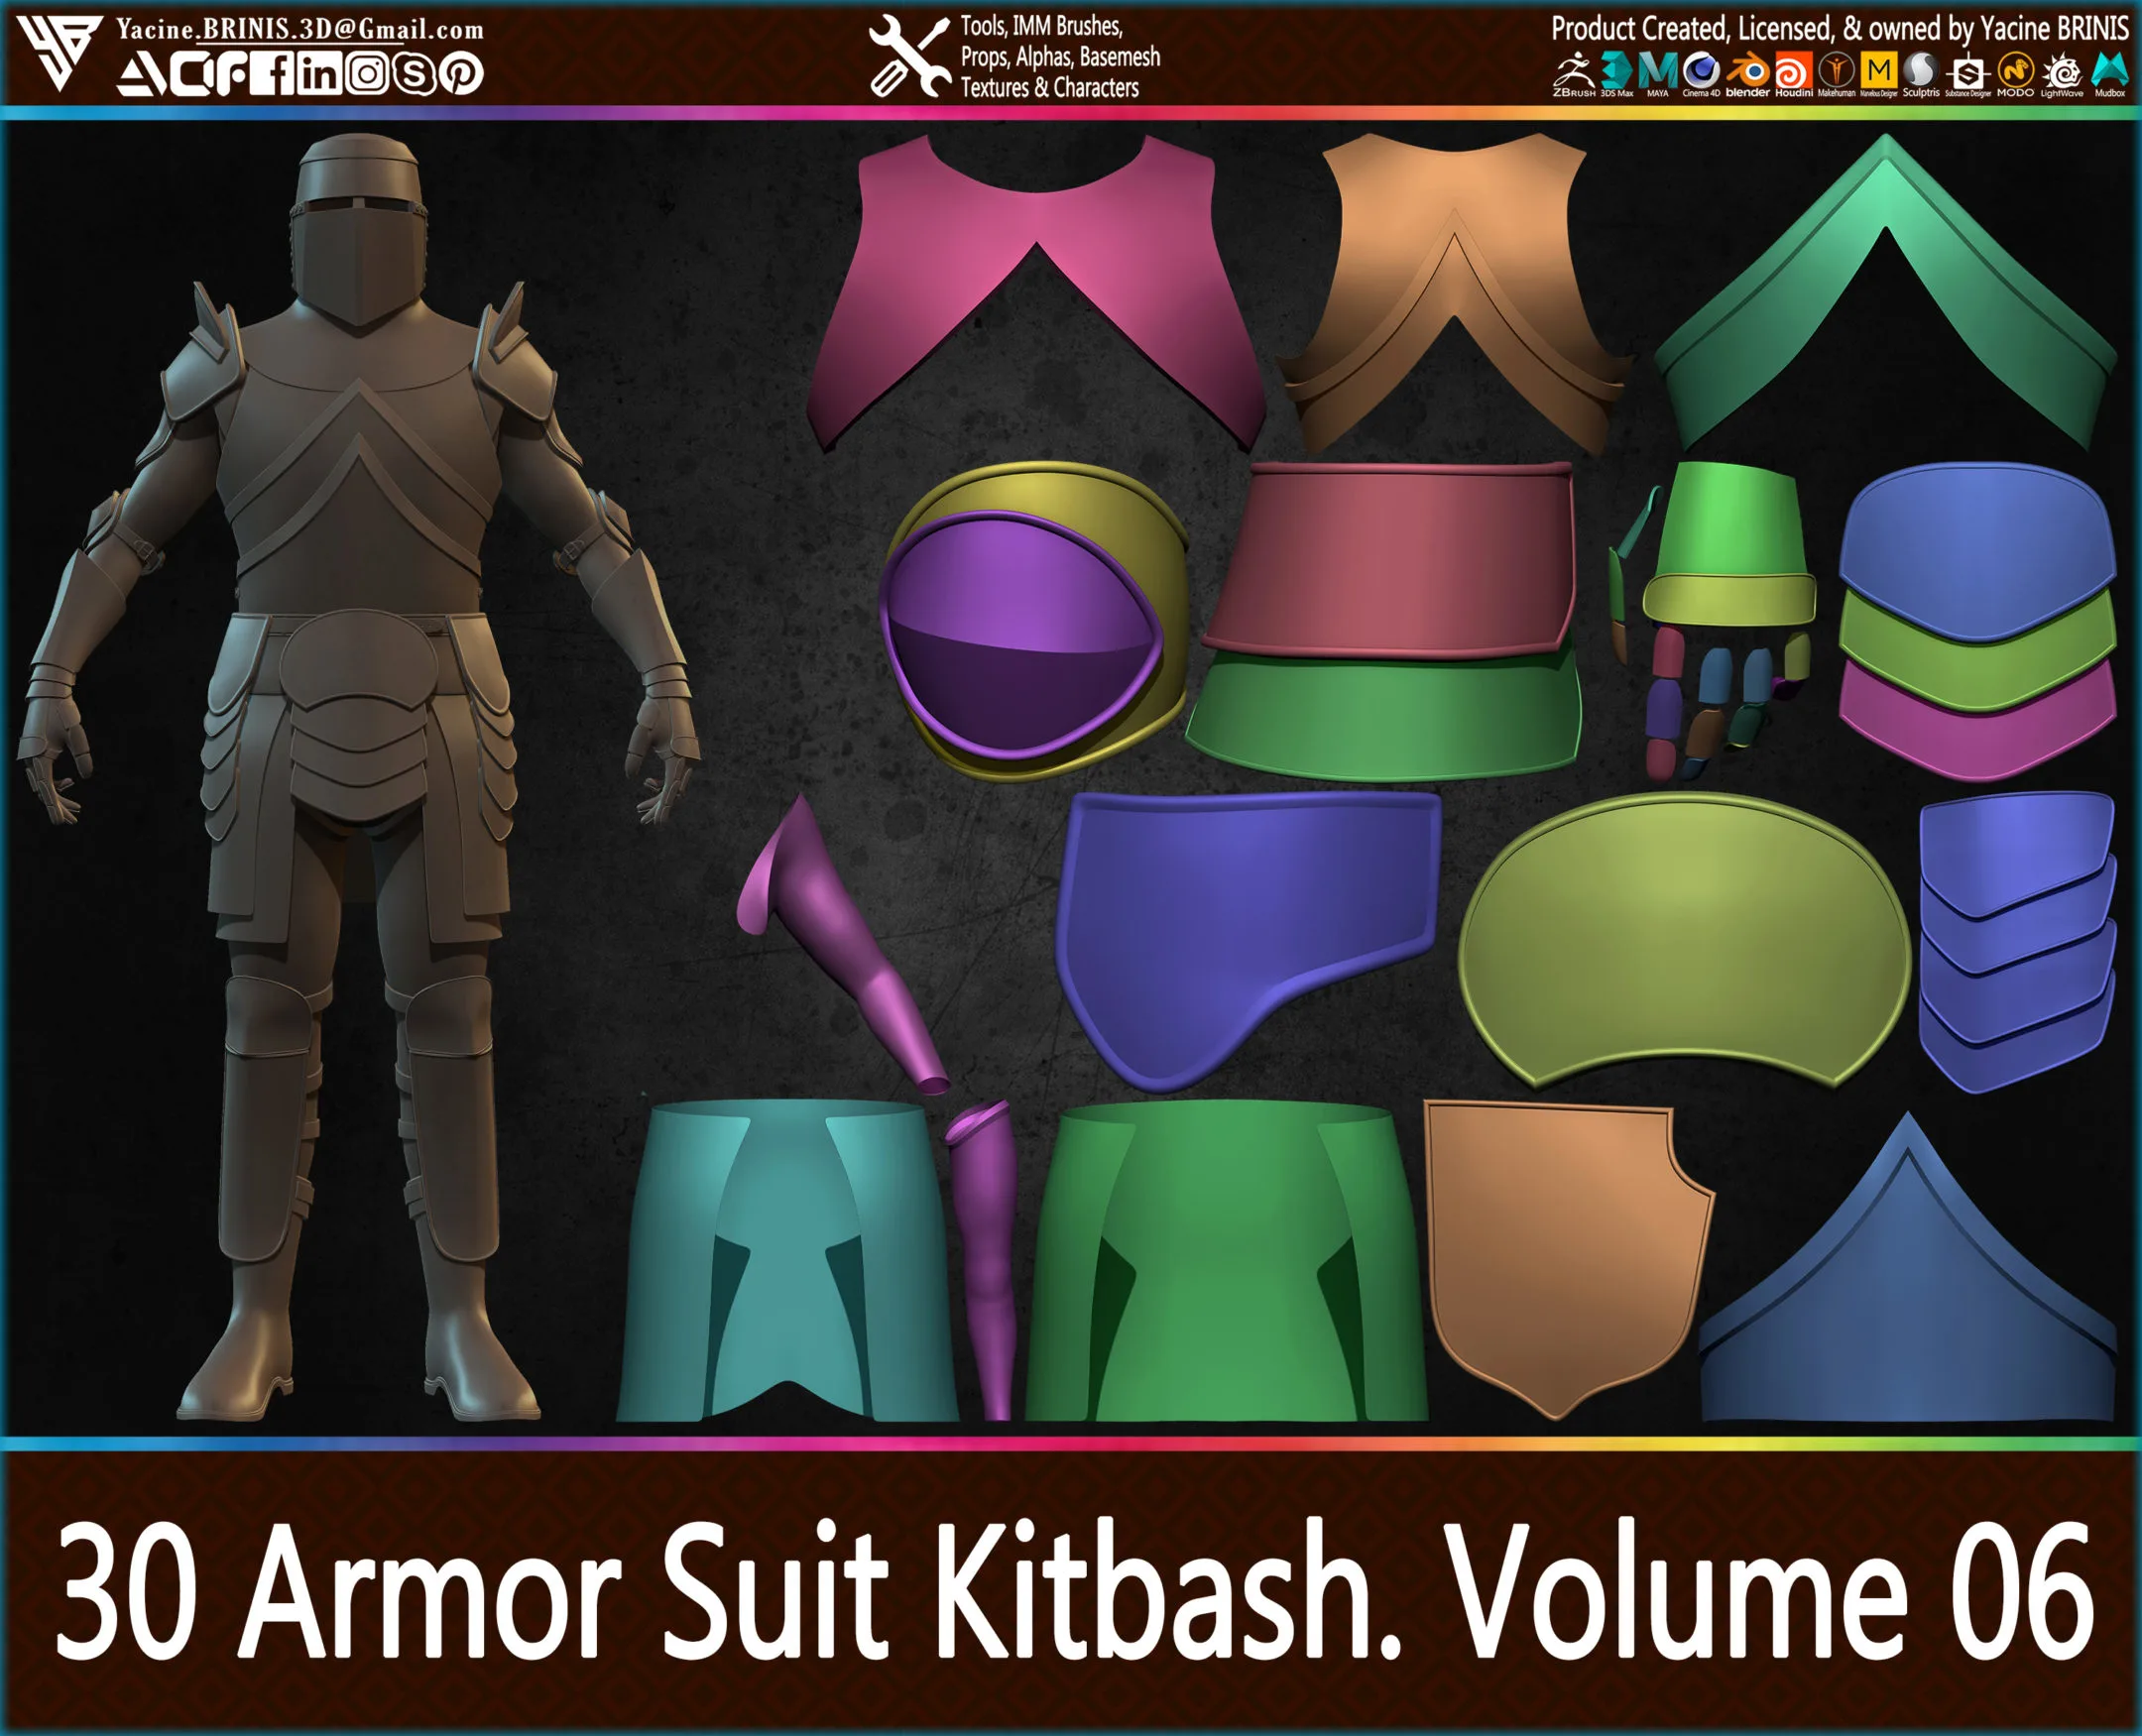 30 Armor Suit Kitbash Vol 06